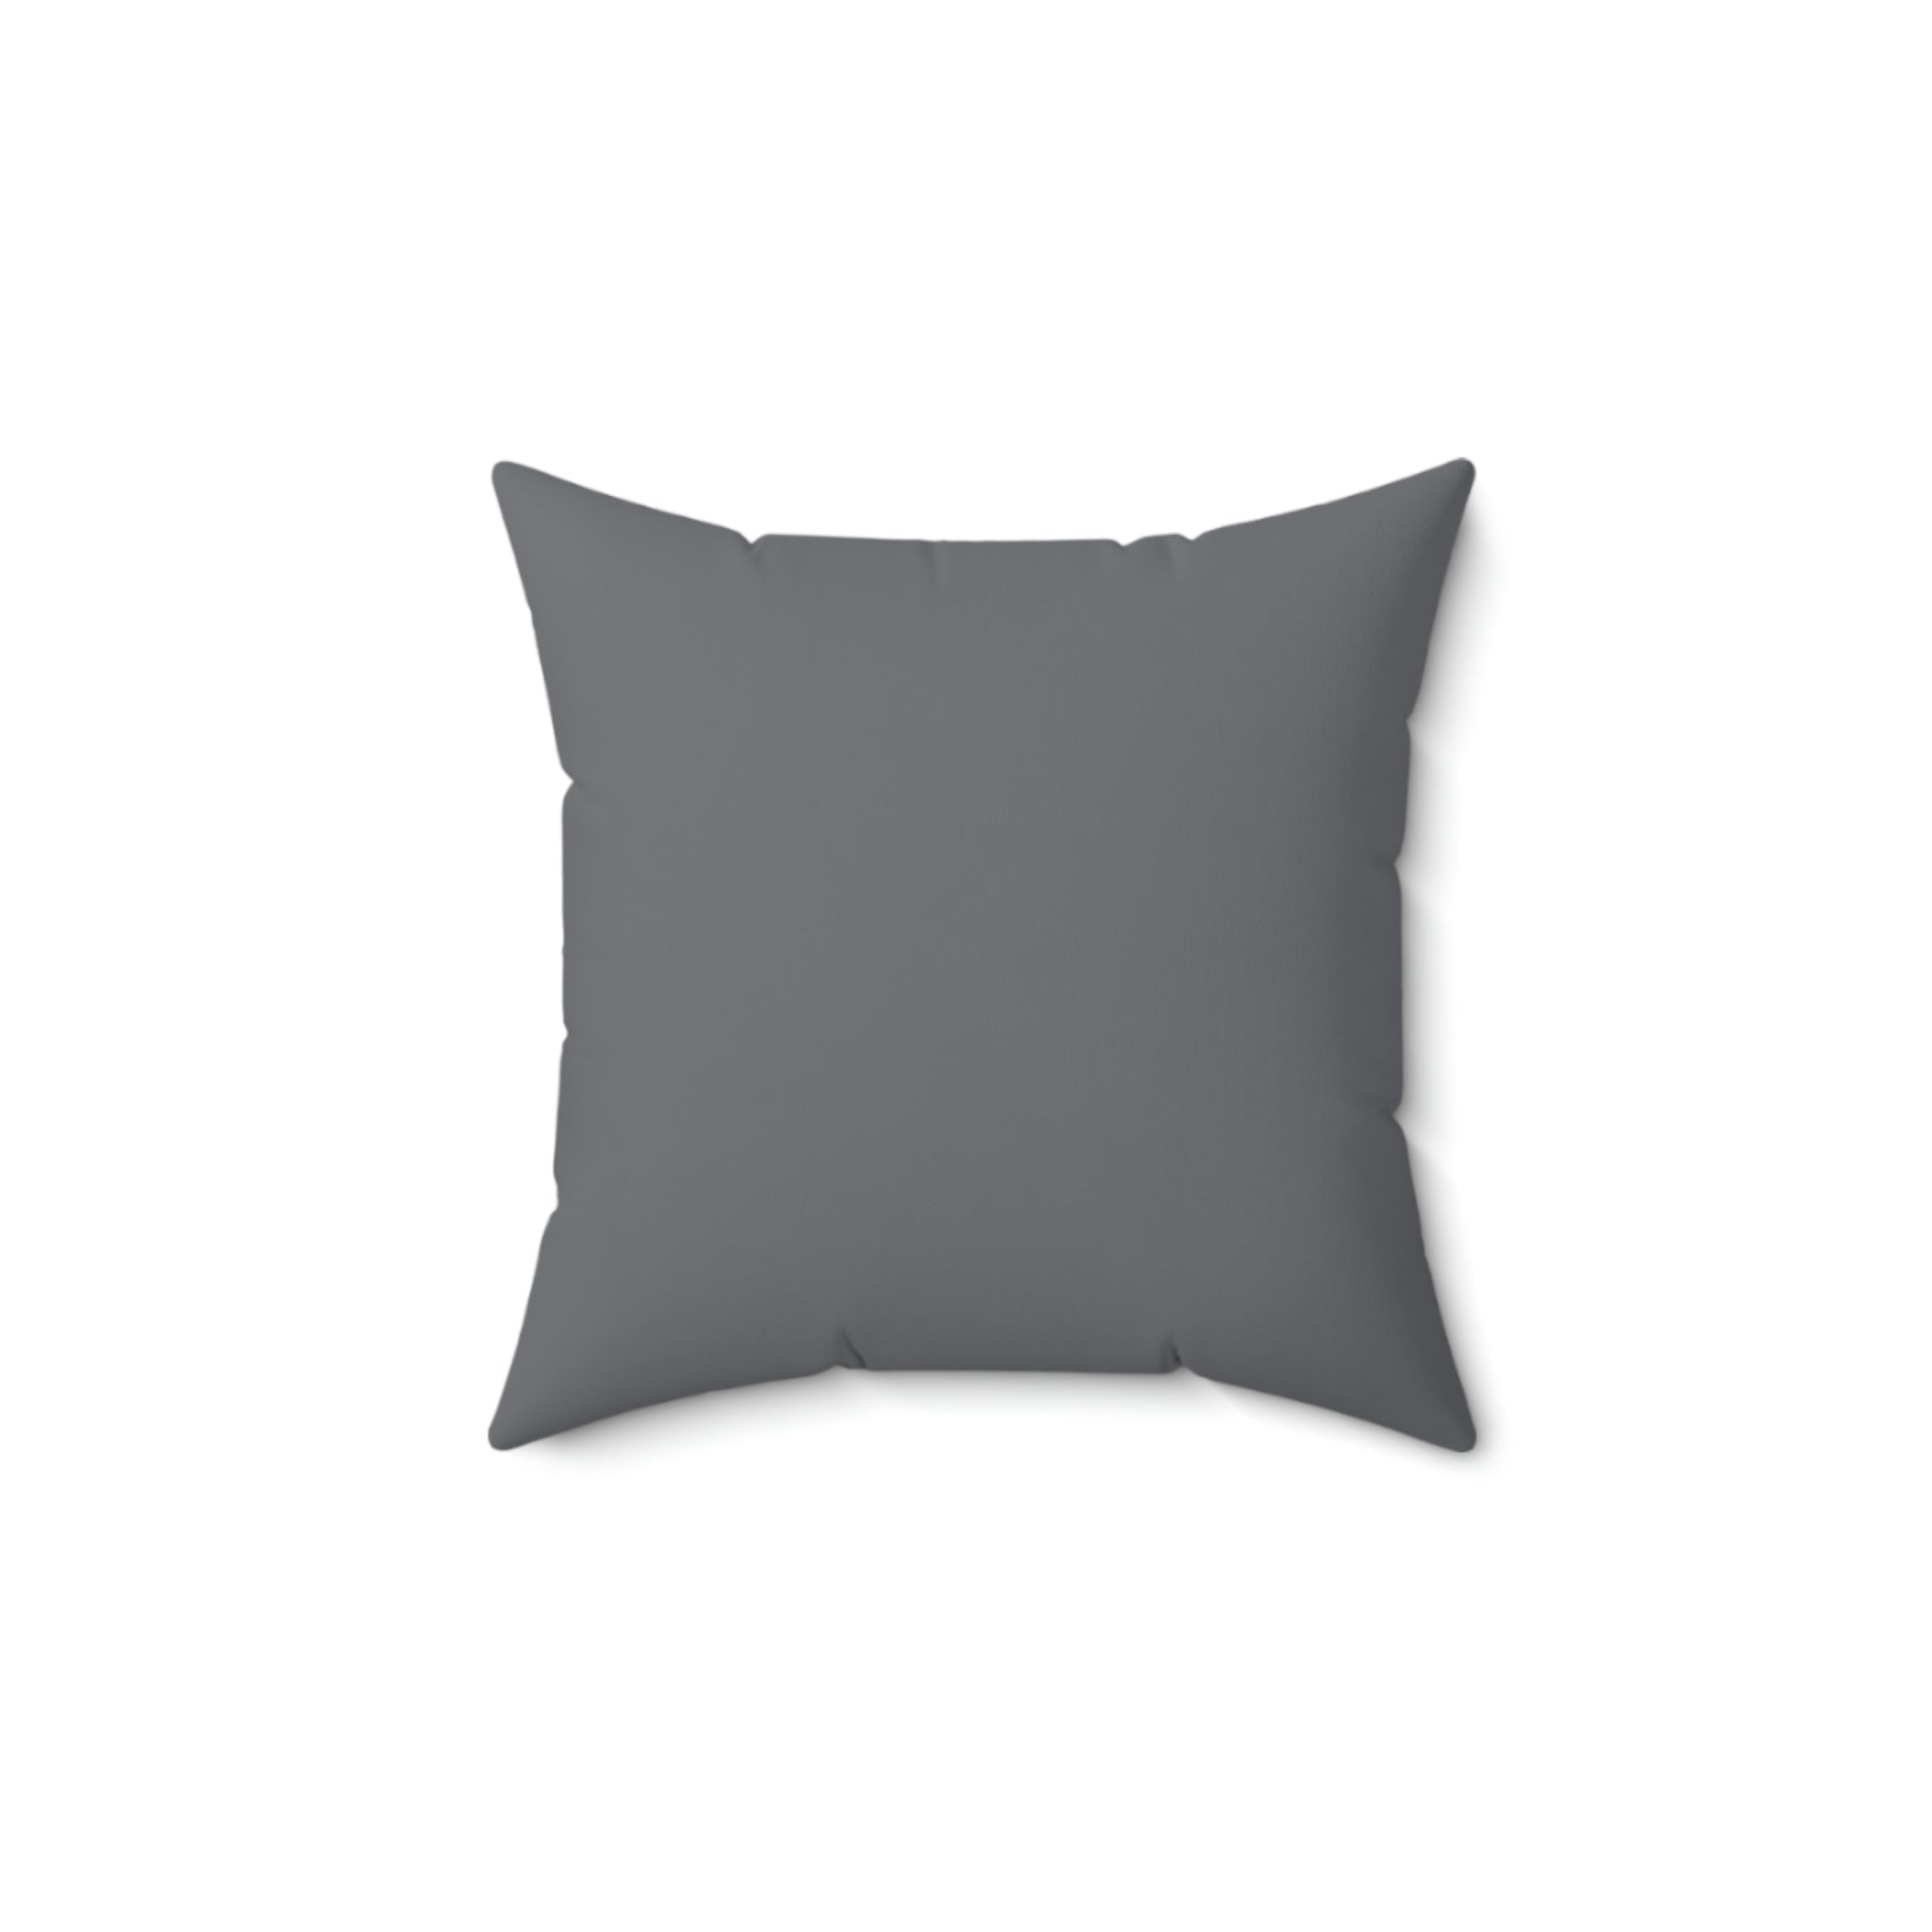 Love Spun Polyester Pillow Heart off white/grey  pattern